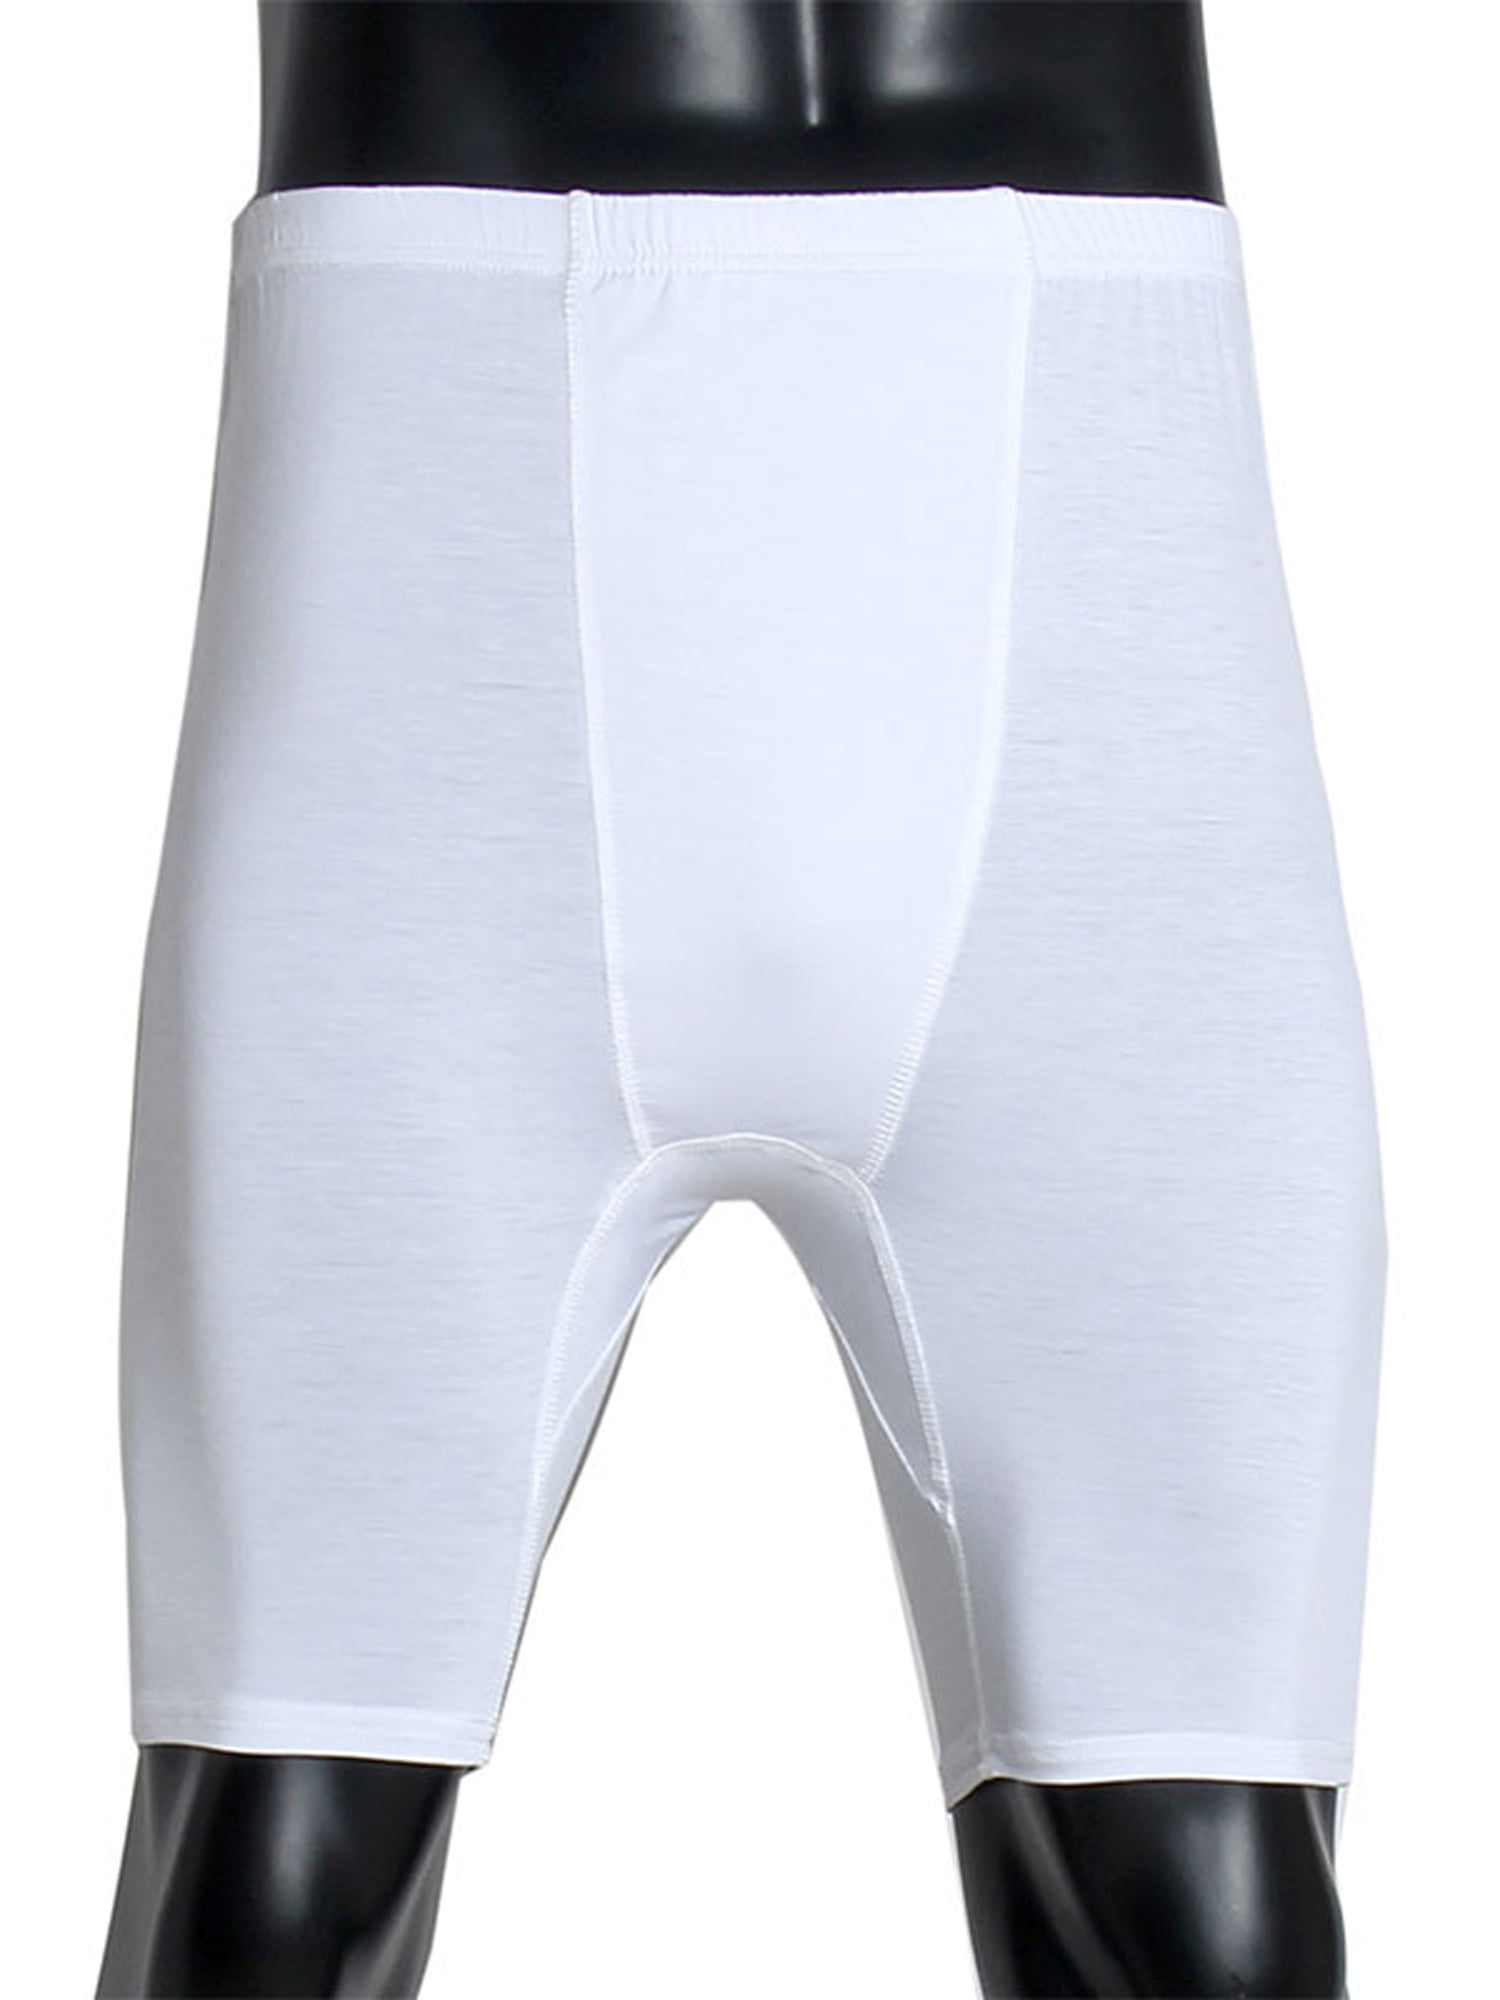 Wodstyle - Men's Muslim Short Pants Breathable Arabic Underpants ...